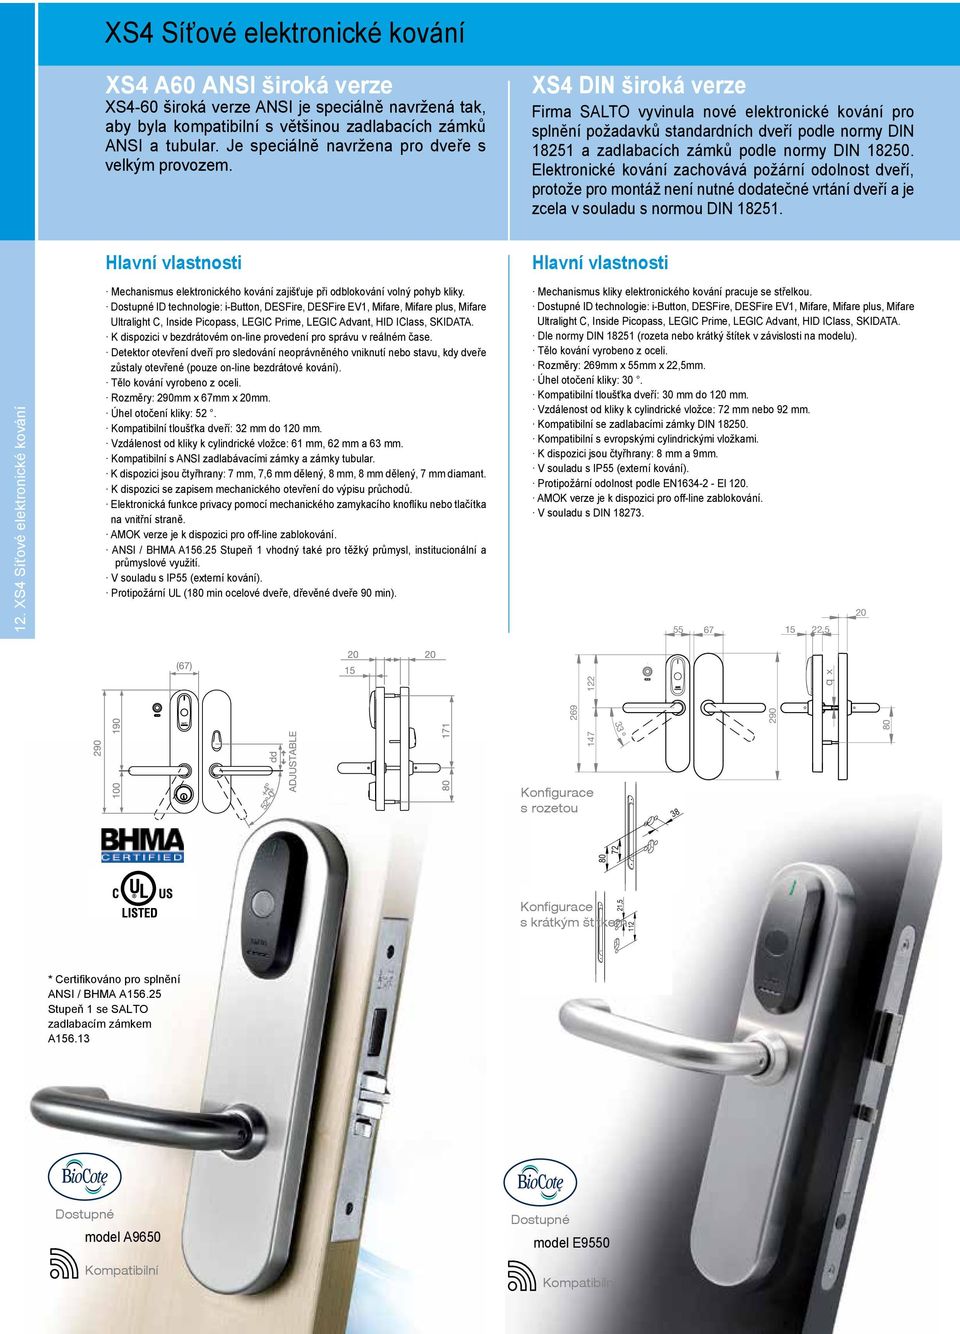 XS4 DIN široká verze Firma SALTO vyvinula nové elektronické kování pro splnění požadavků standardních dveří podle normy DIN 18251 a zadlabacích zámků podle normy DIN 18250.